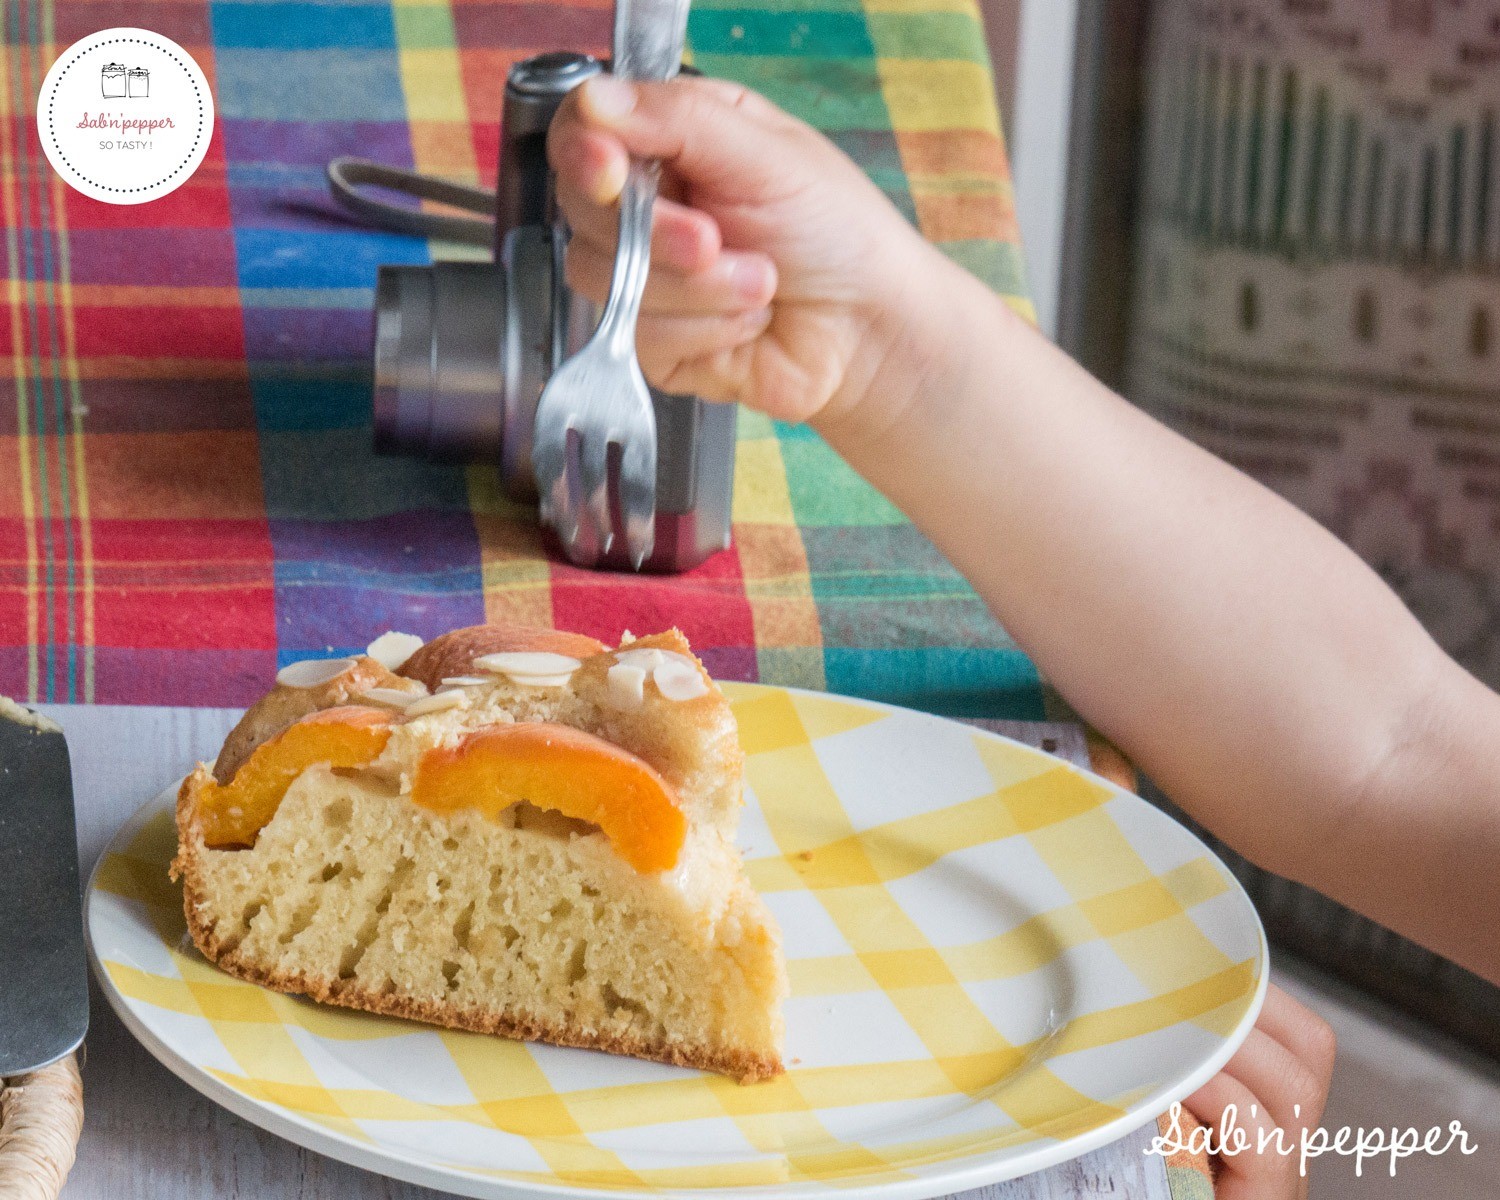 Gâteau au yaourt abricot et amande : le goûter parfait pour les enfants